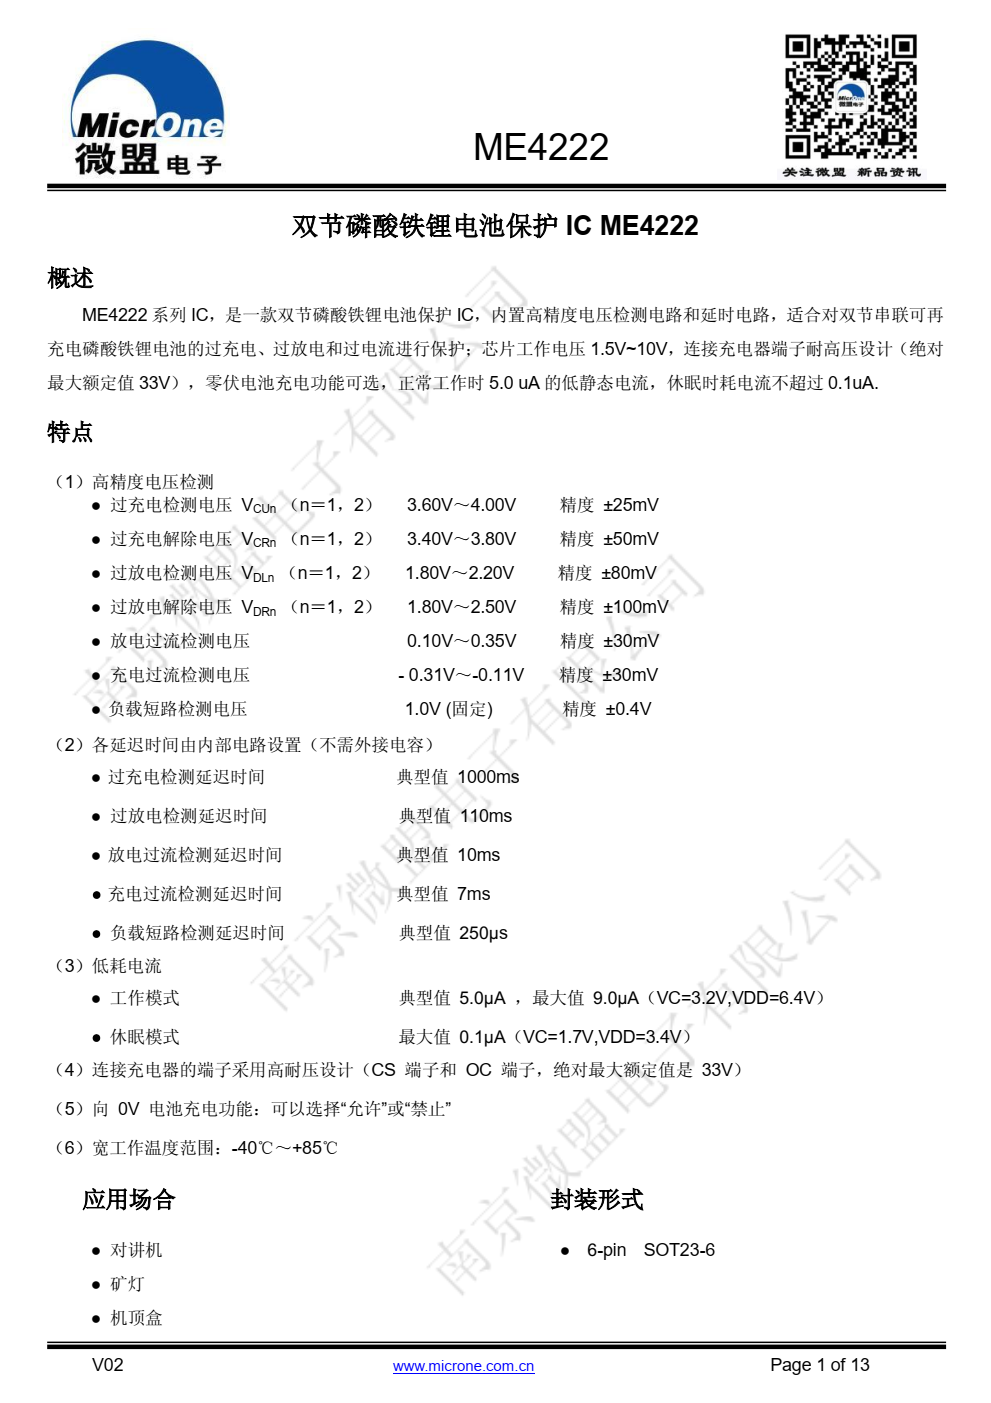 ME4222 系列 IC，是一款双节磷酸铁锂电池保护 IC，内置高精度电压检测电路和延时电路